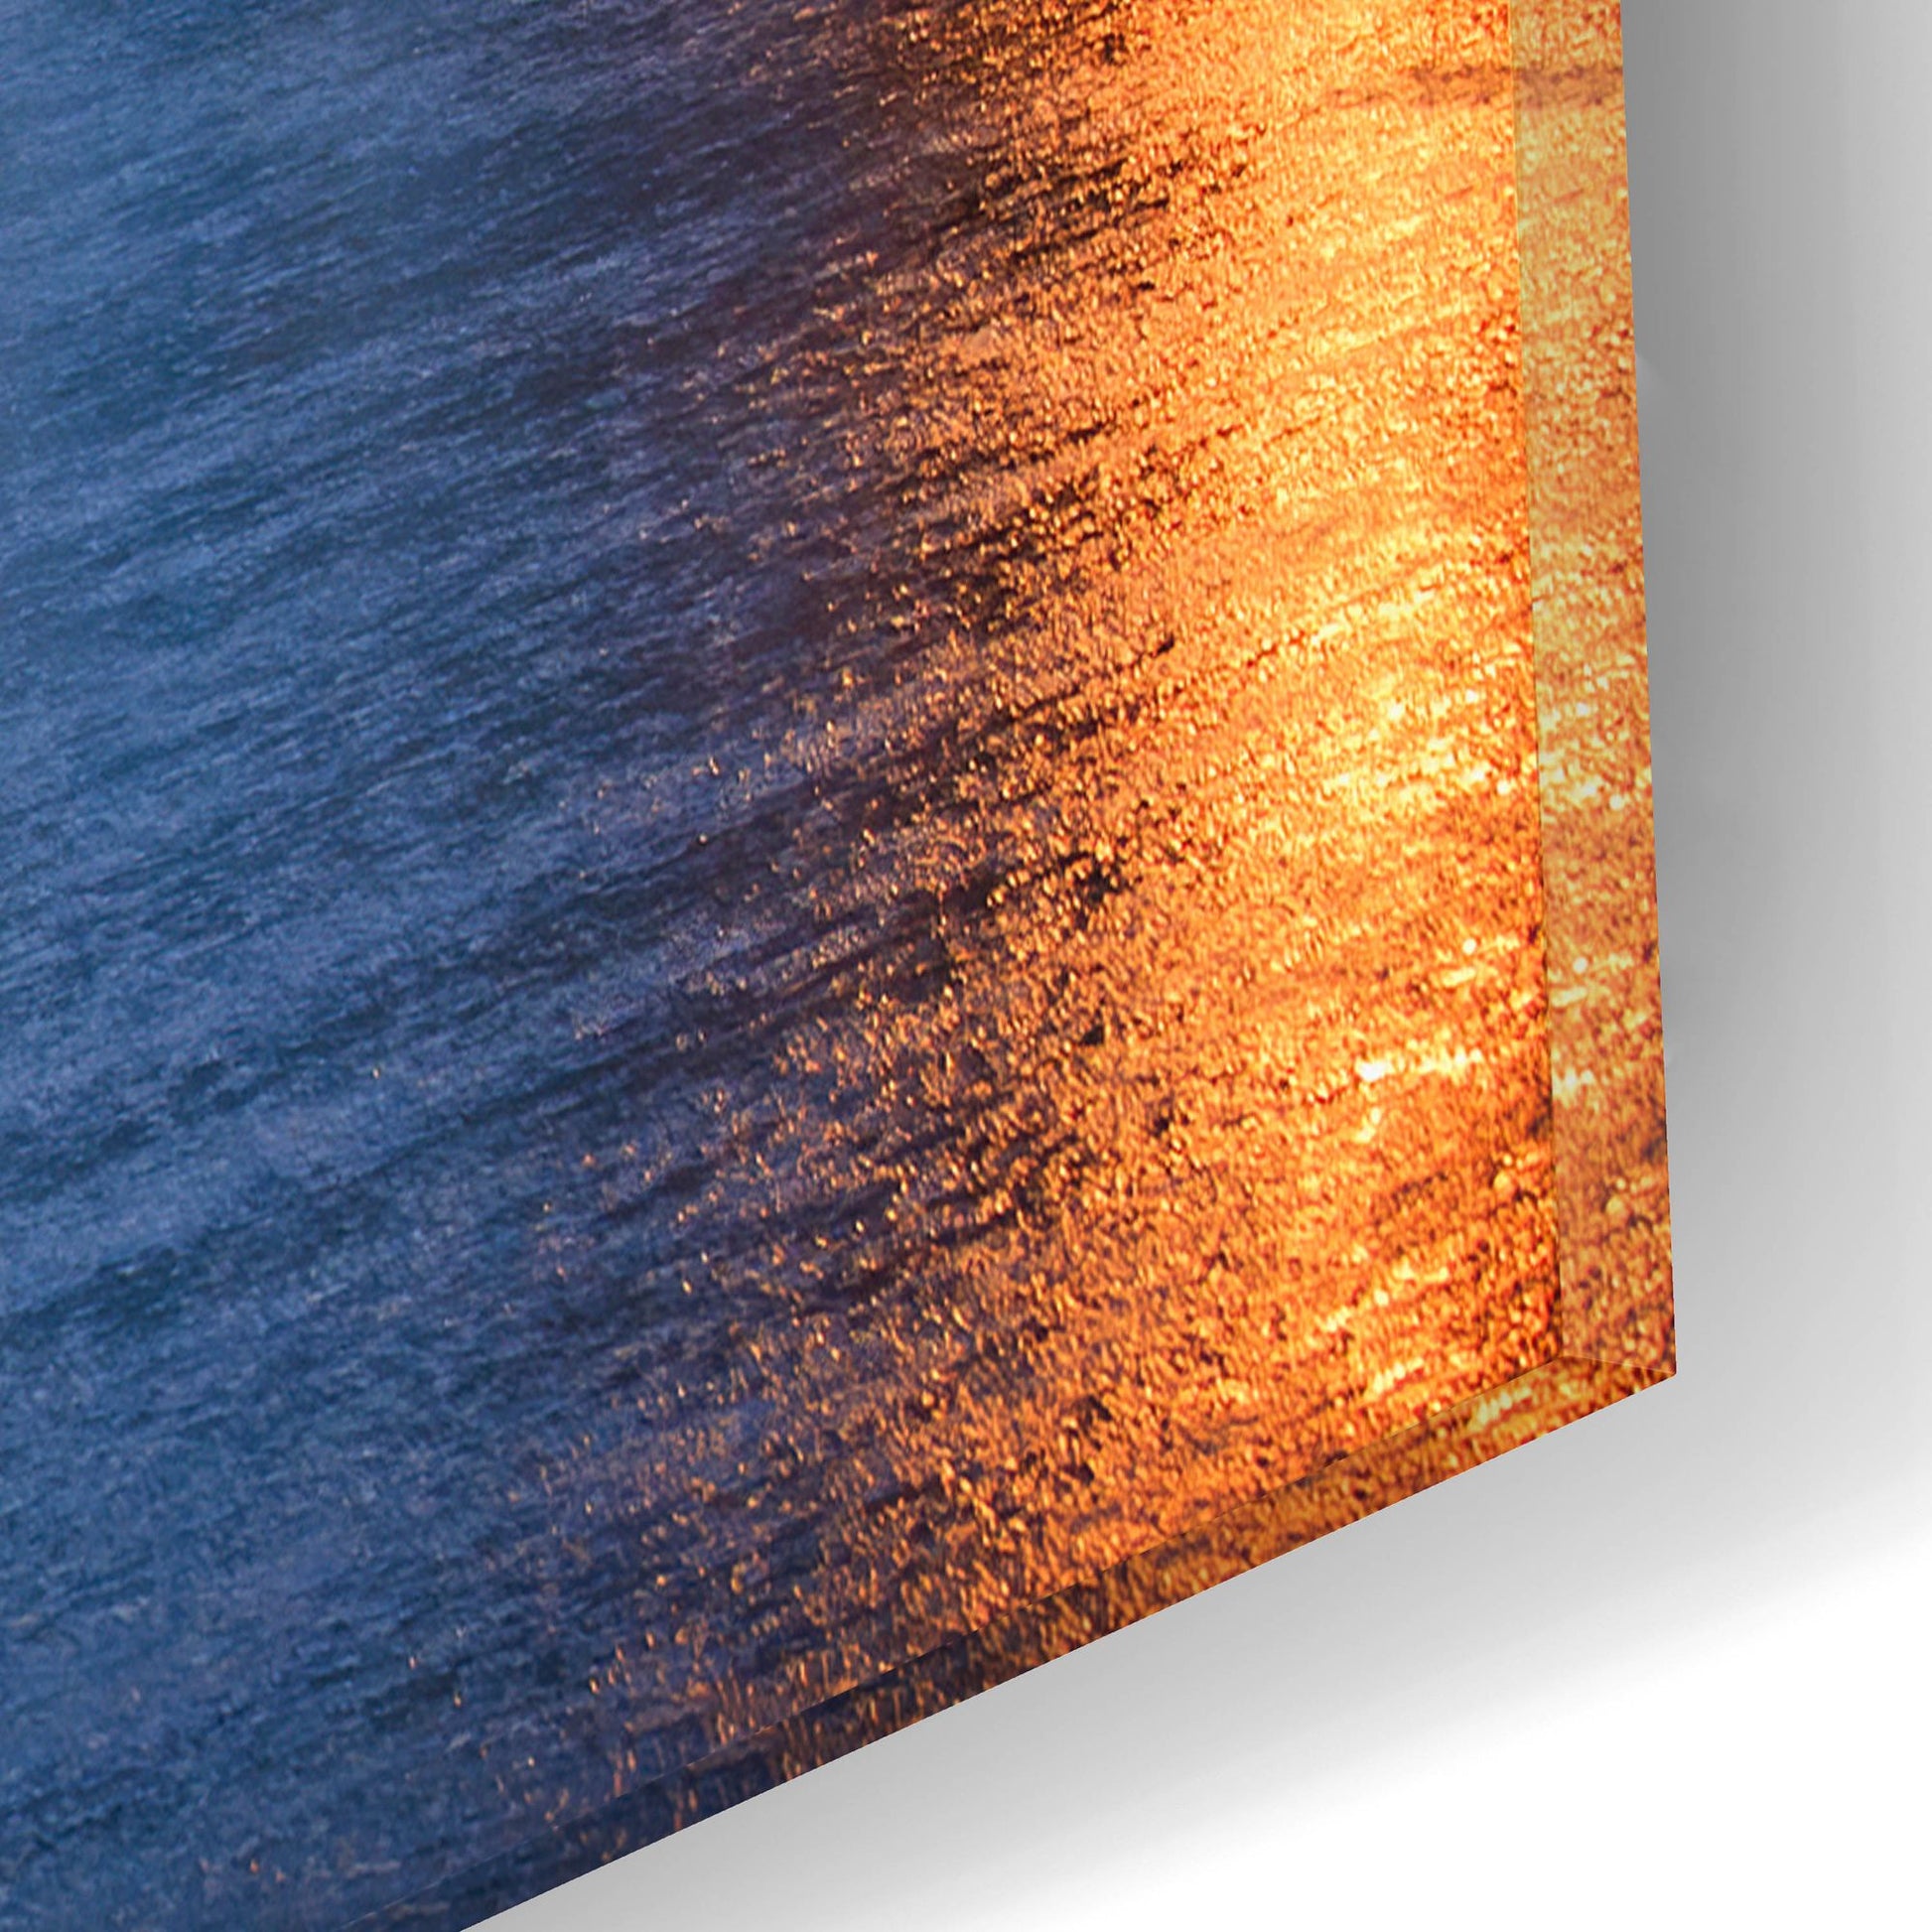 Epic Art ' Quiet Dawn On Mackinac Island' by Adam Romanowicz, Acrylic Glass Wall Art,16x12